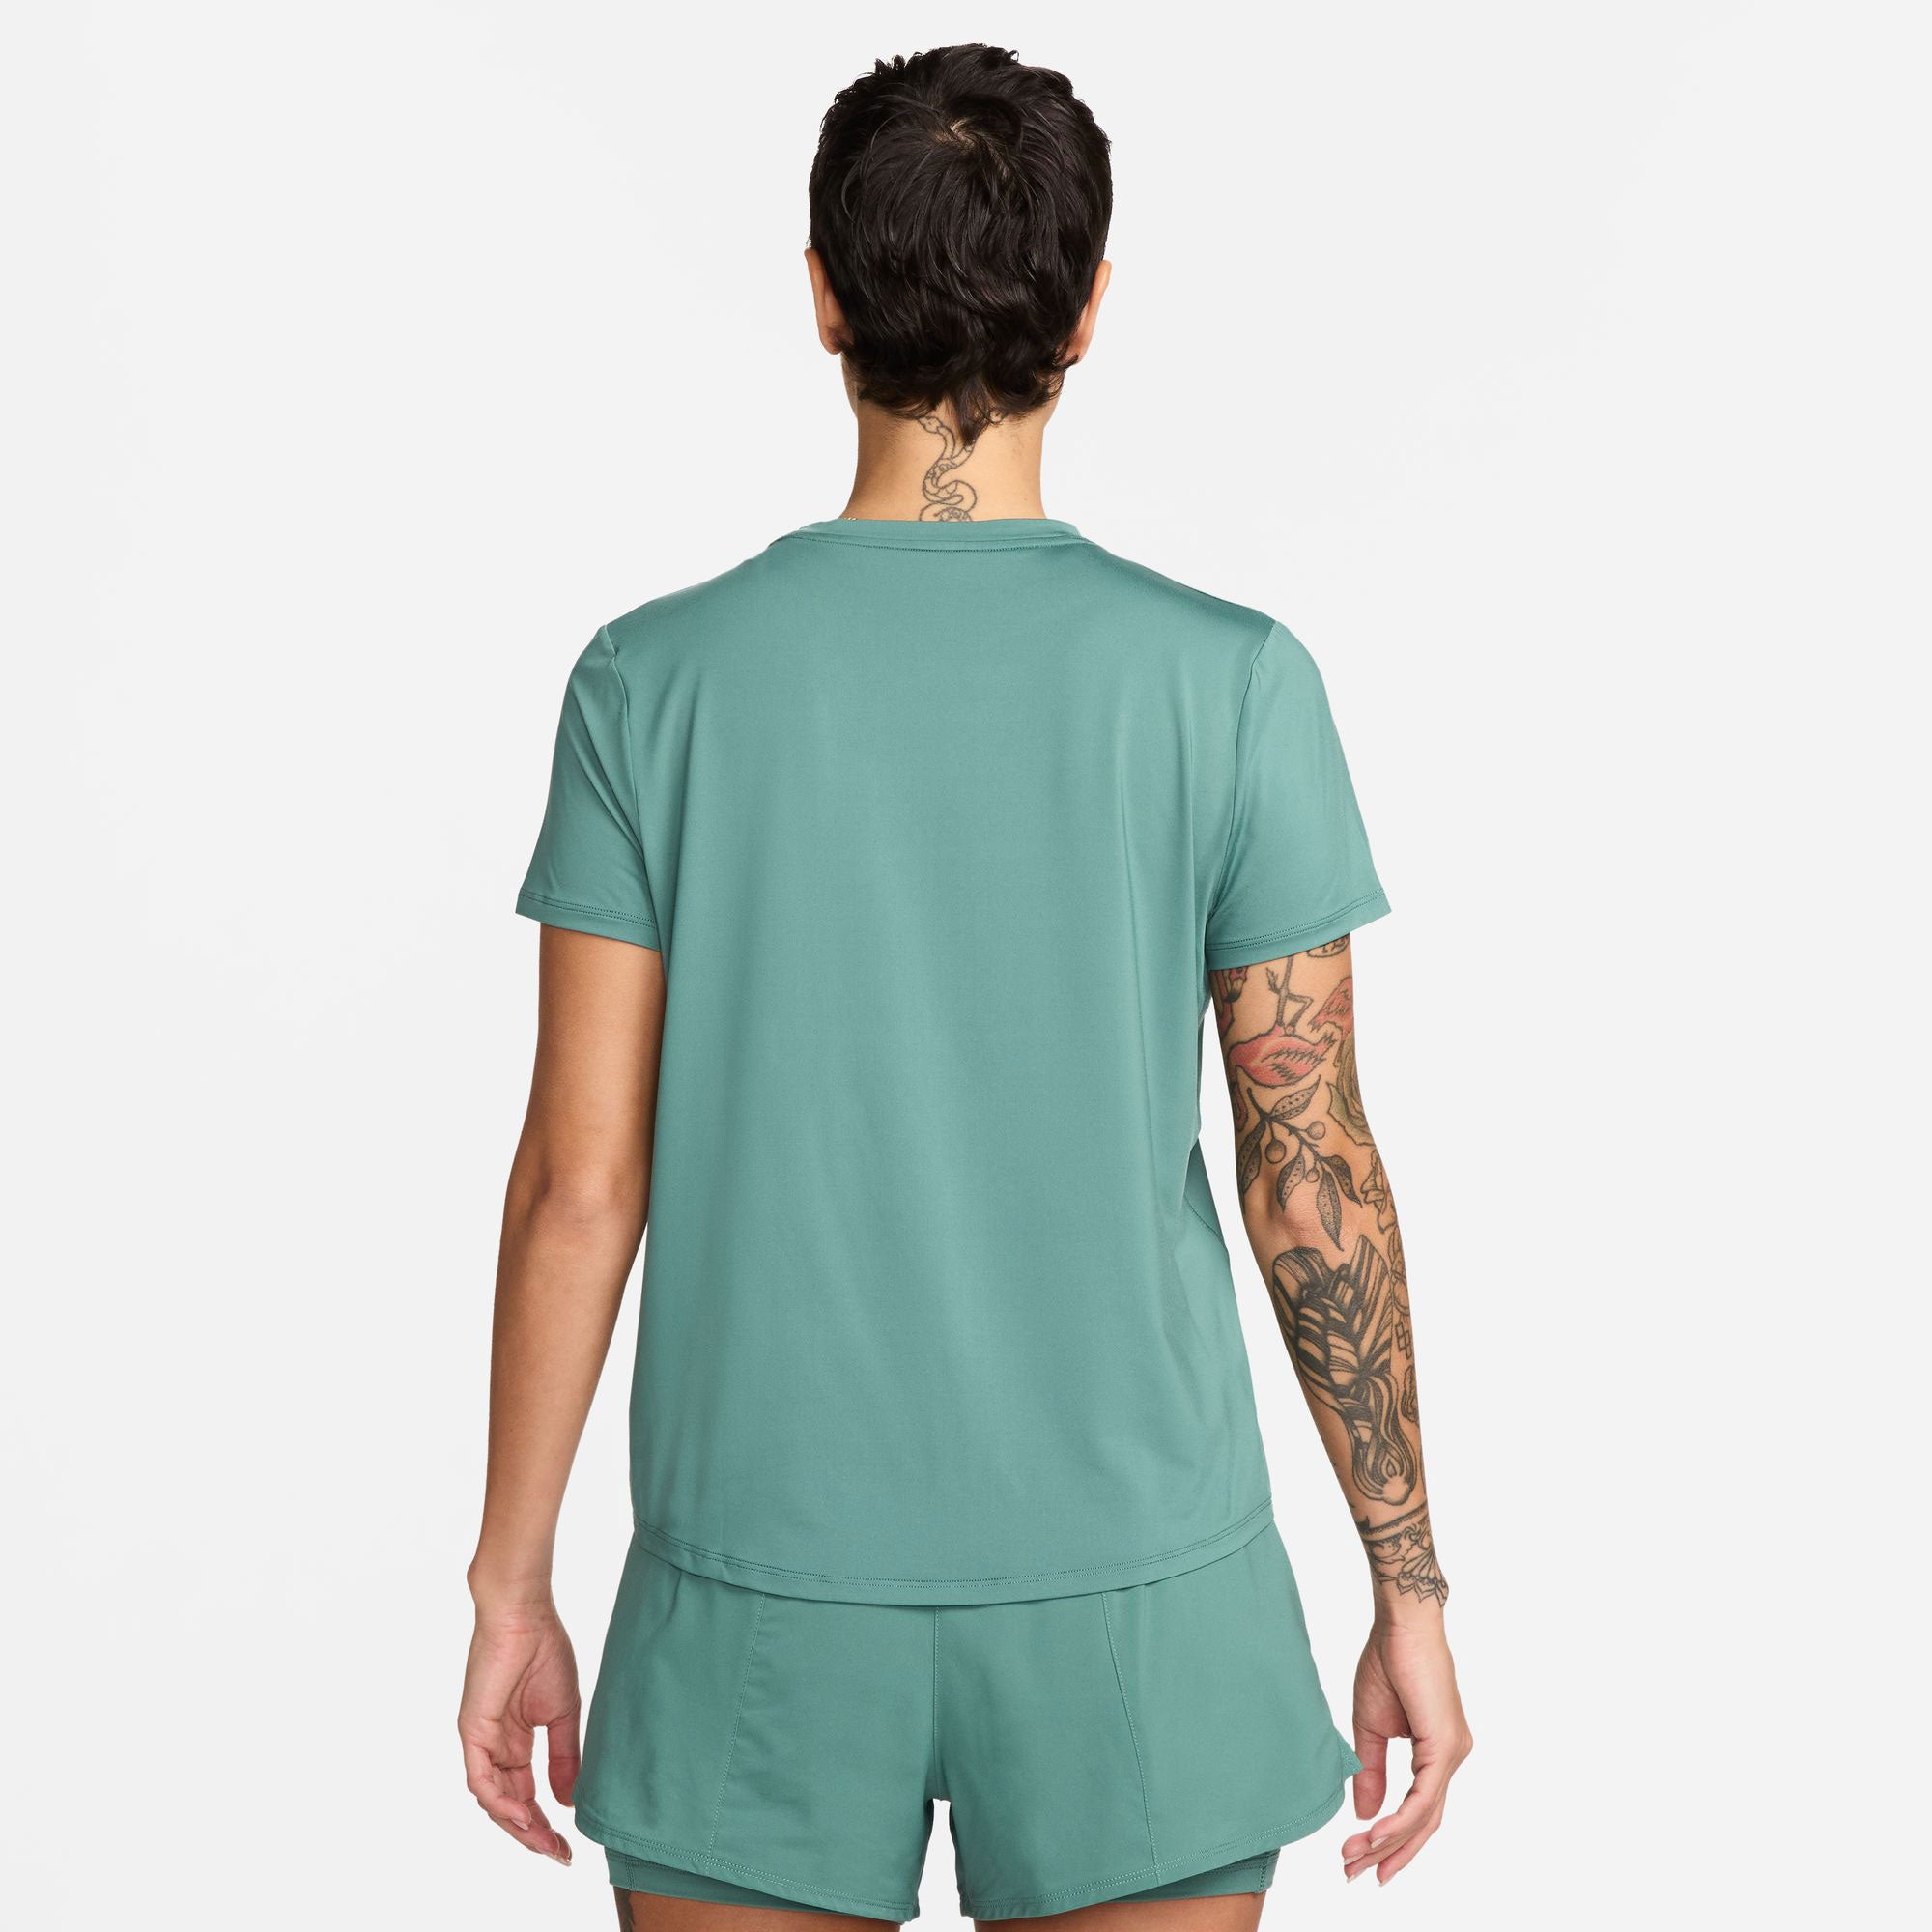 Nike One Classic Women's Dri-FIT Shirt - Green (2)